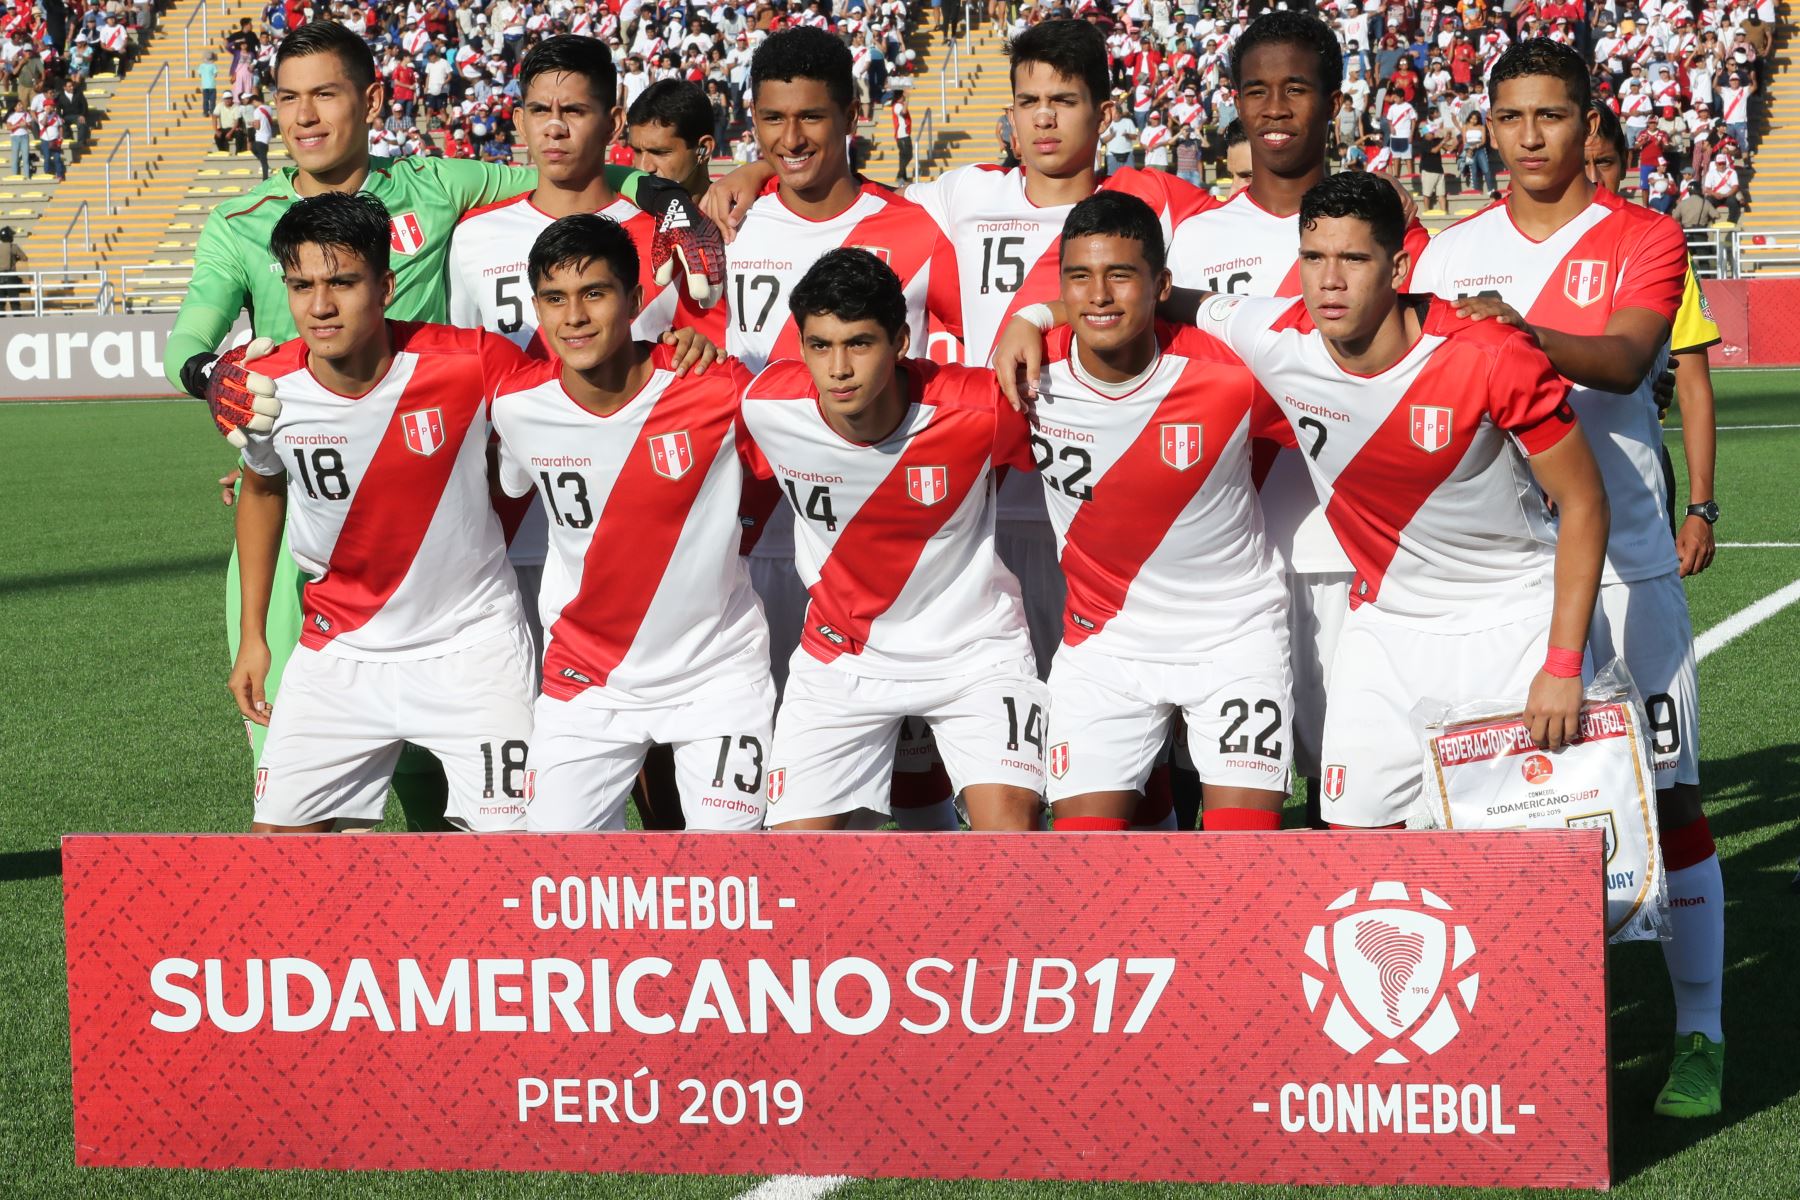 Sudamericano Sub 17: las portadas de los diarios tras quedar fuera del Mundial